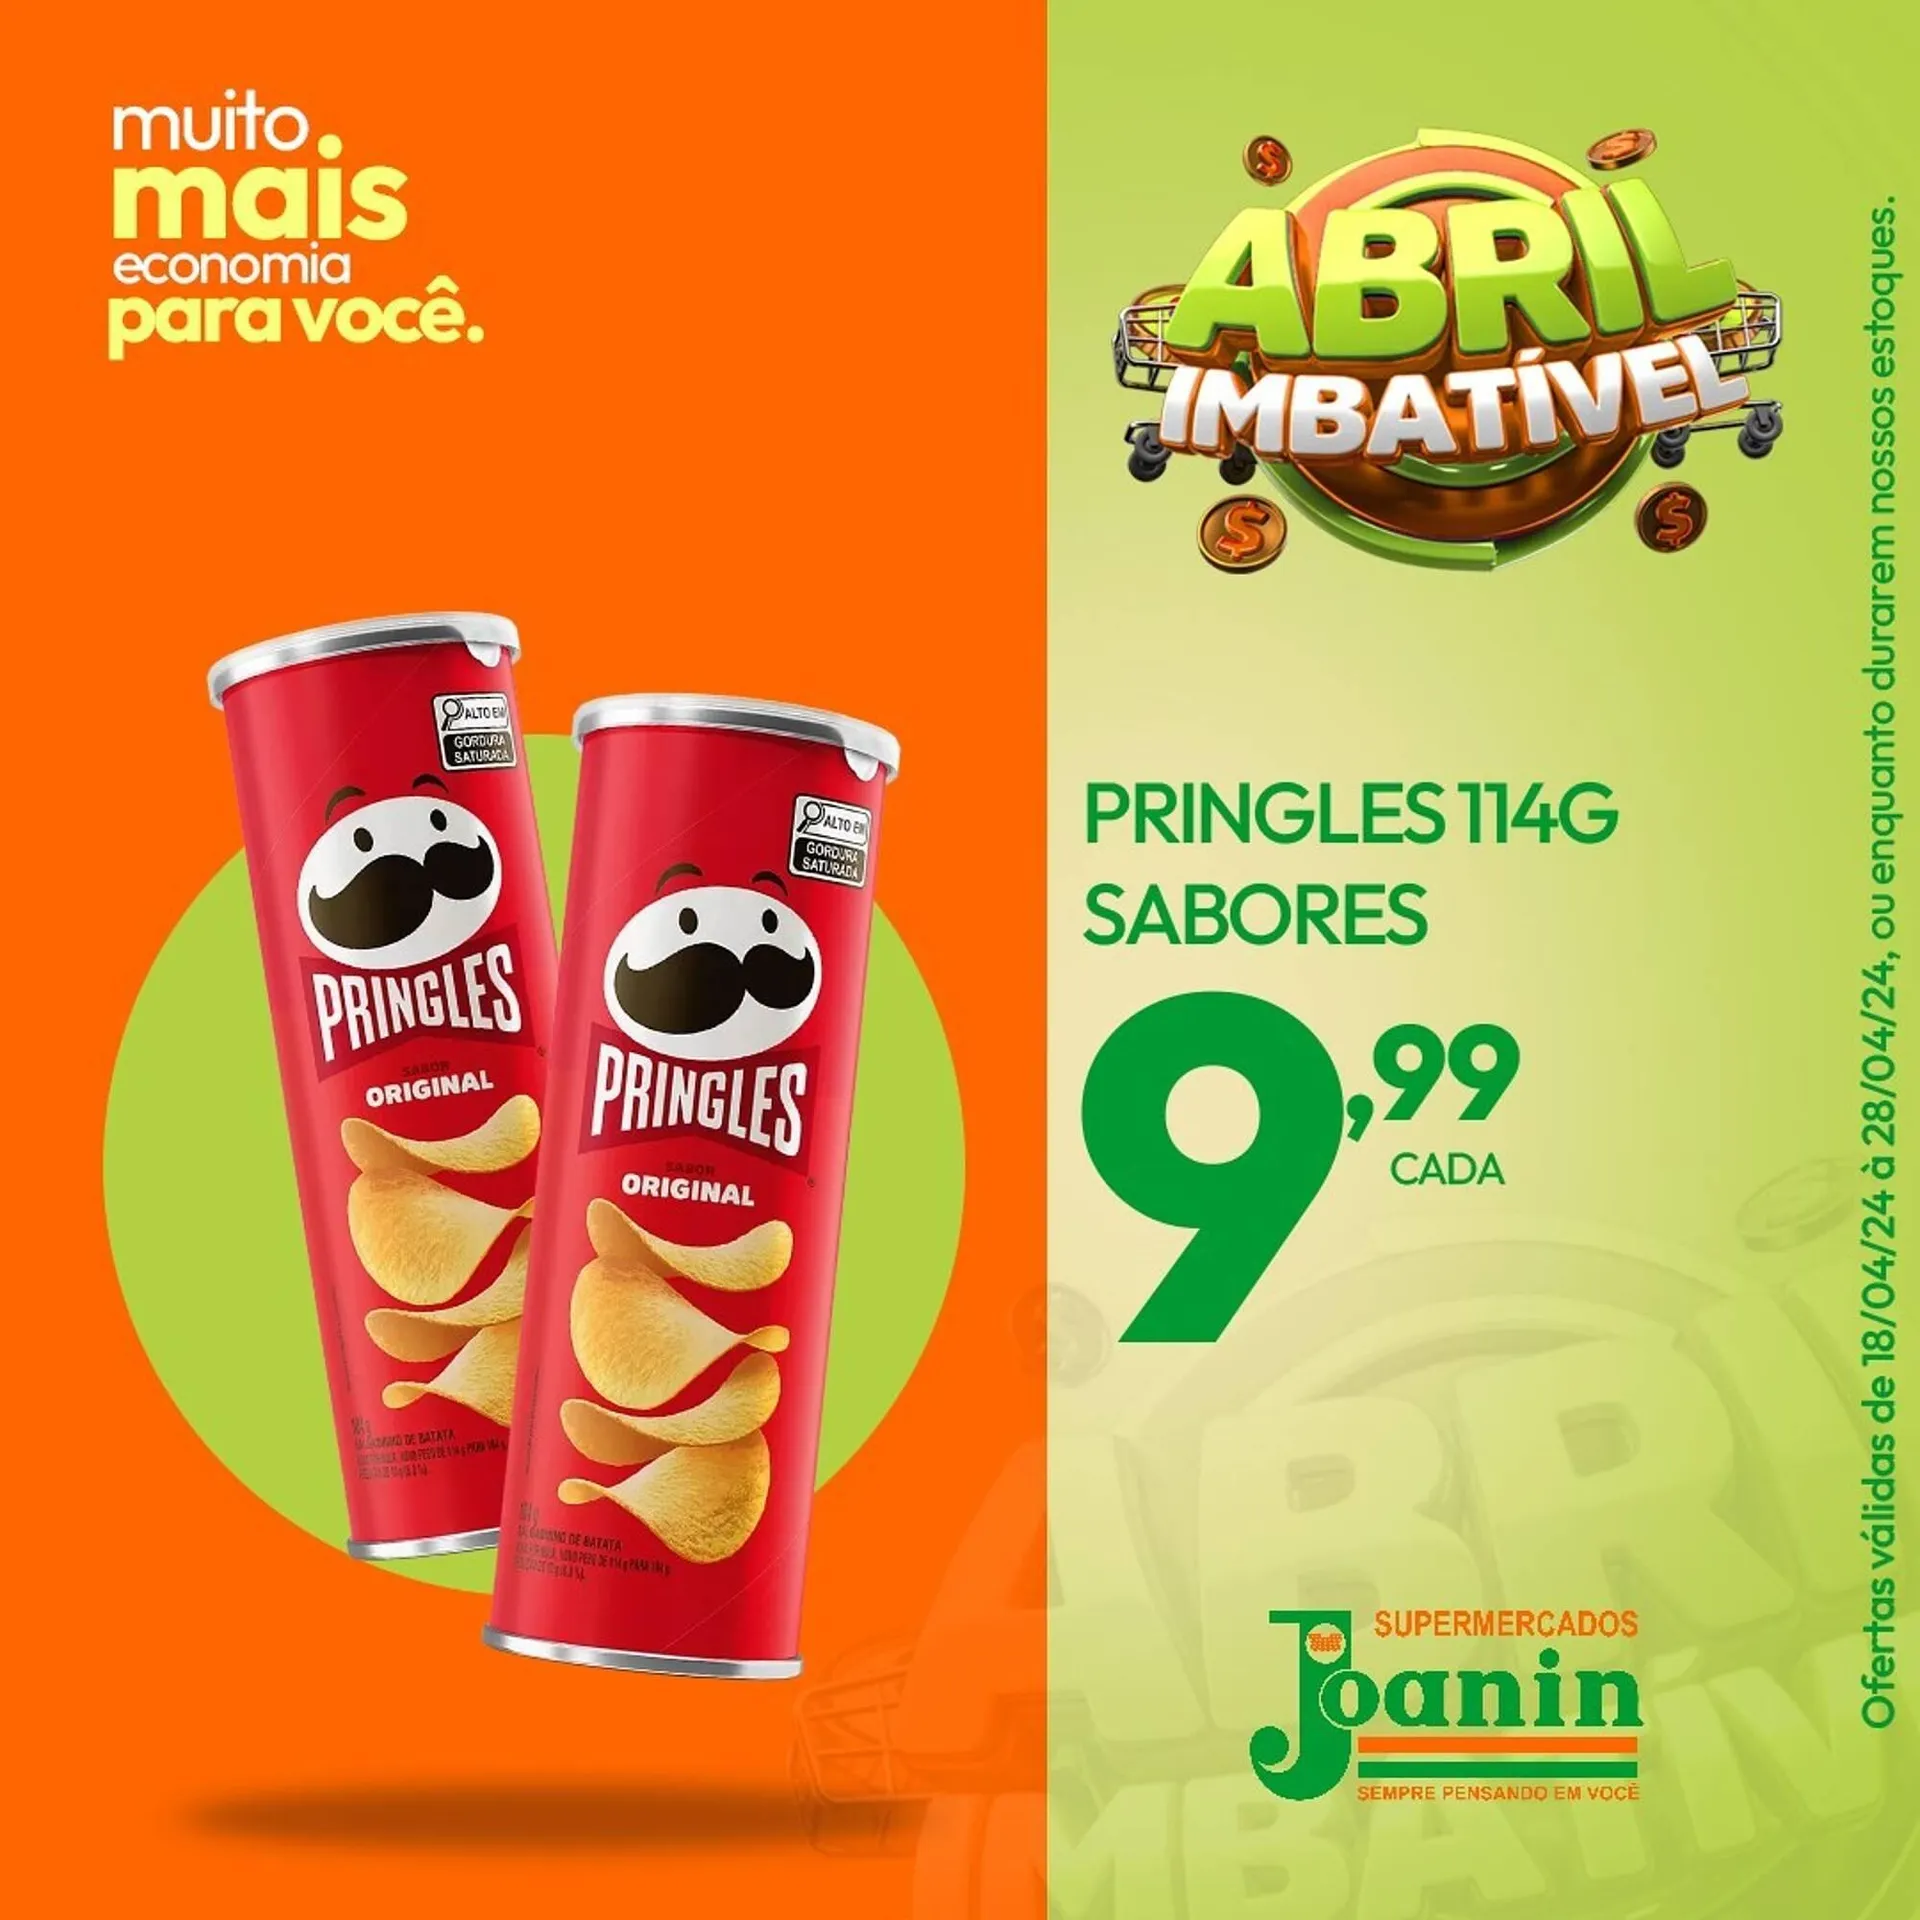 Catálogo Supermercados Joanin - 2